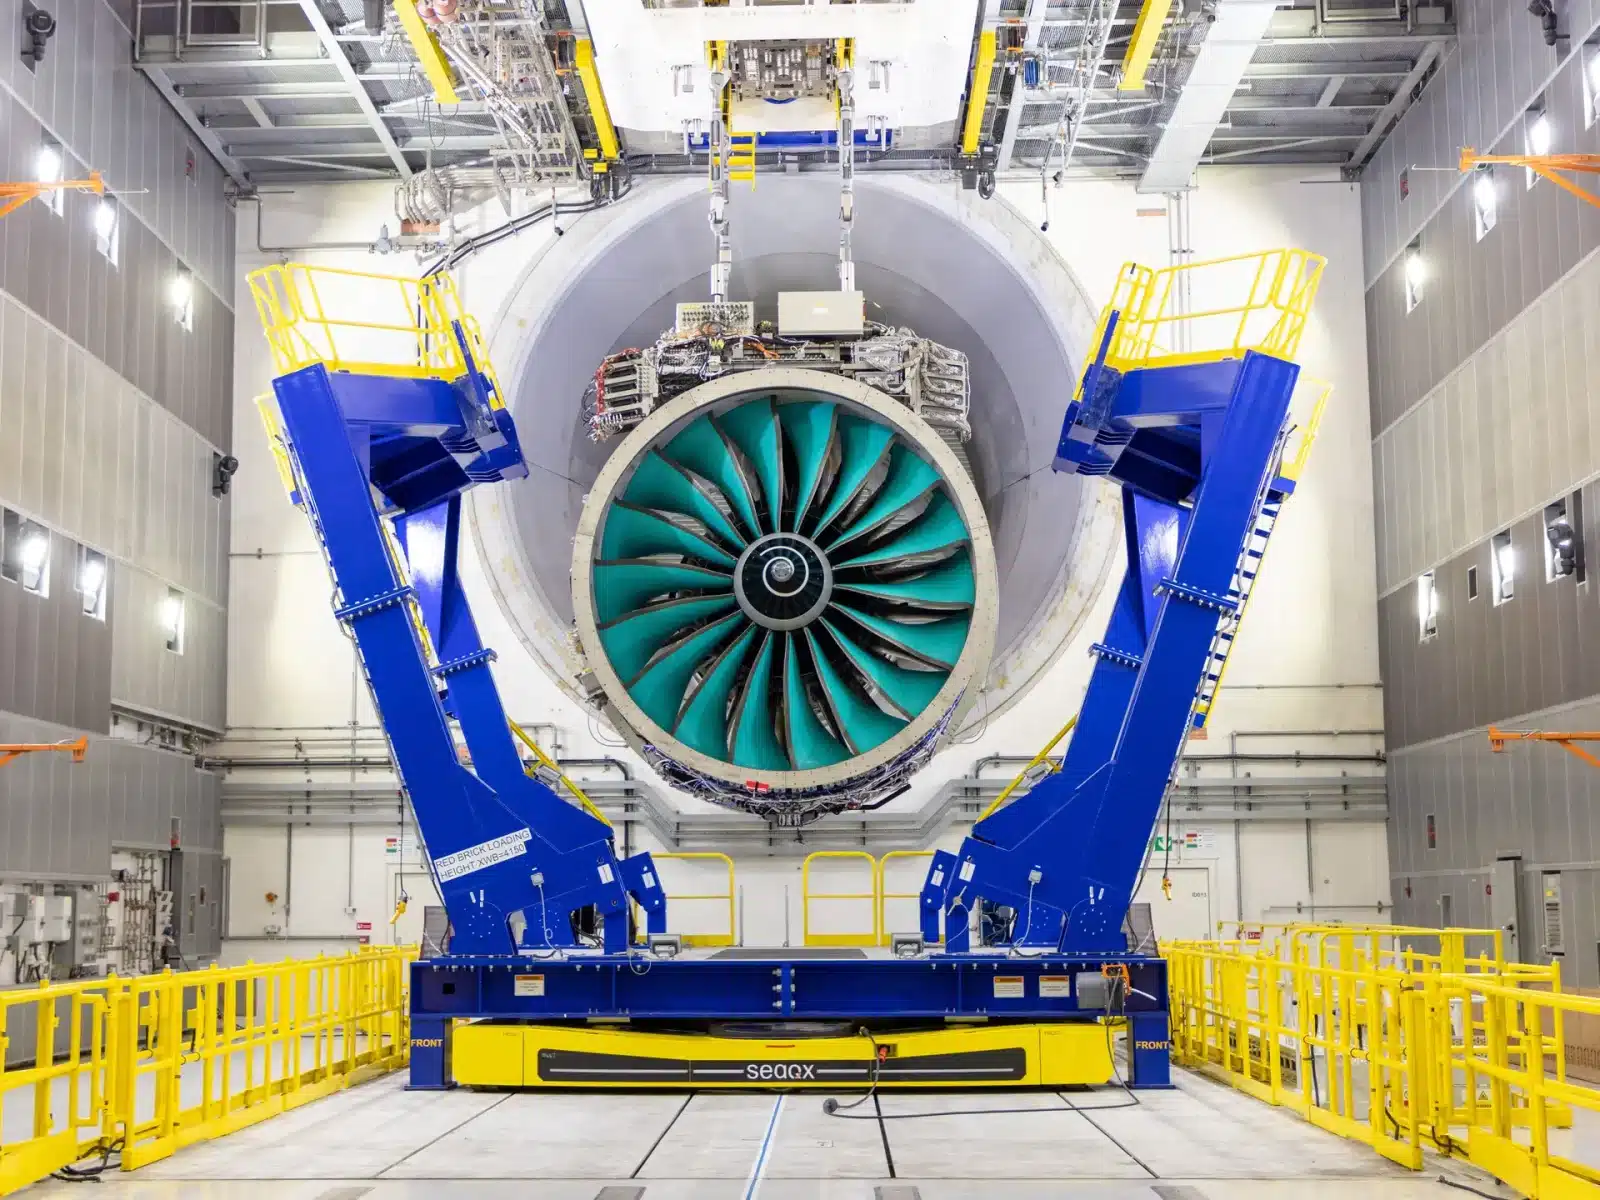 次世代旅客機向けに開発中の超巨大ジェットエンジンのテストがまもなく開始